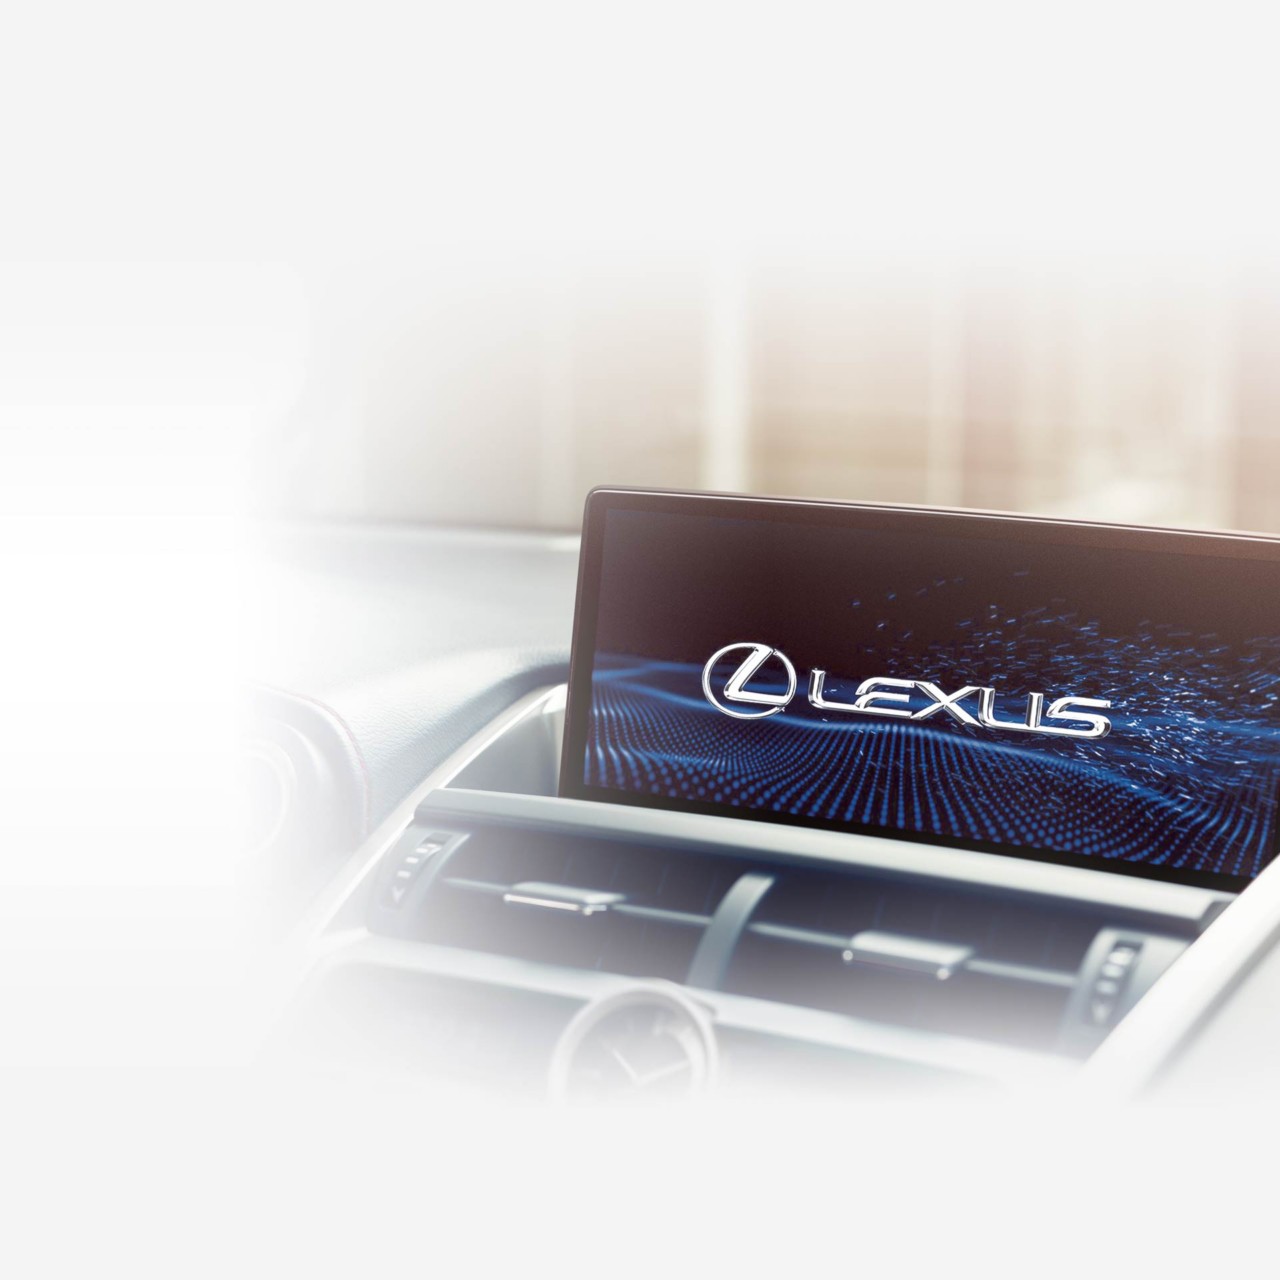 Сервис lexus. Обновленная мультимедиа Лексус. Кар плей в Лексусе. Lexus система бос. Орг система Лексус.